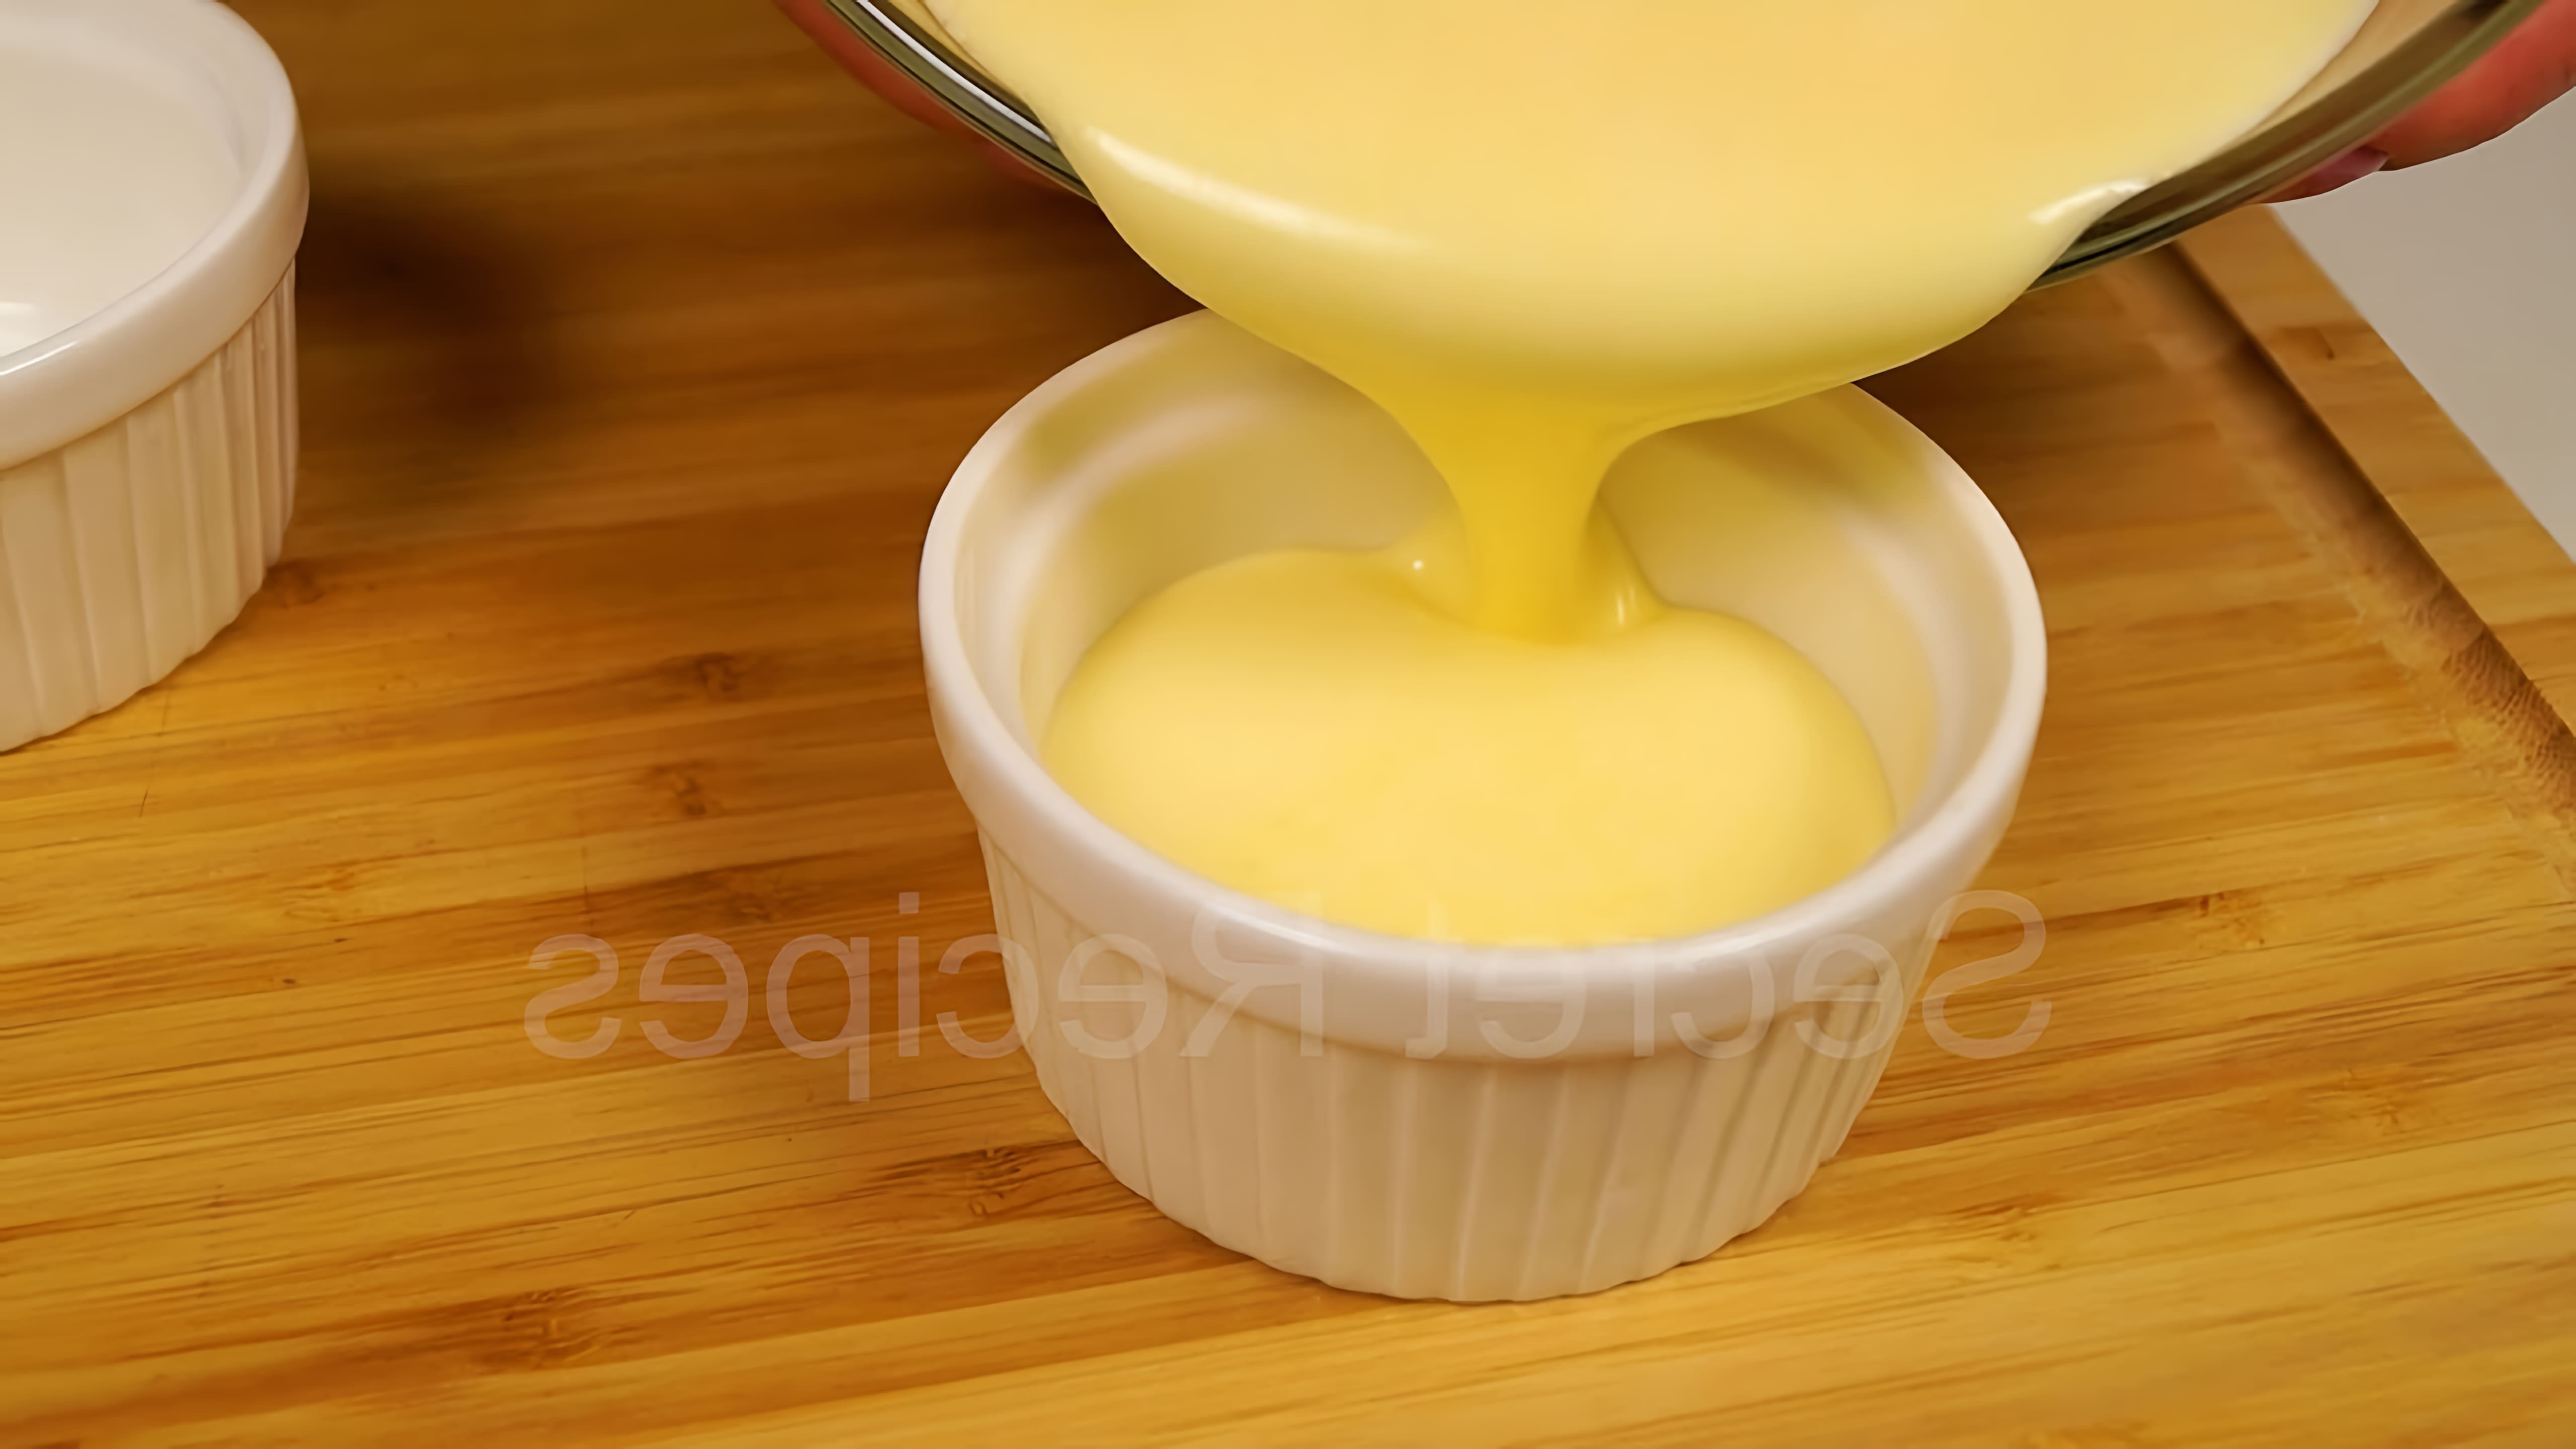 В этом видео демонстрируется процесс приготовления классического английского крема, который является основой для мороженого и кремов, а также может использоваться в качестве основы для десертов